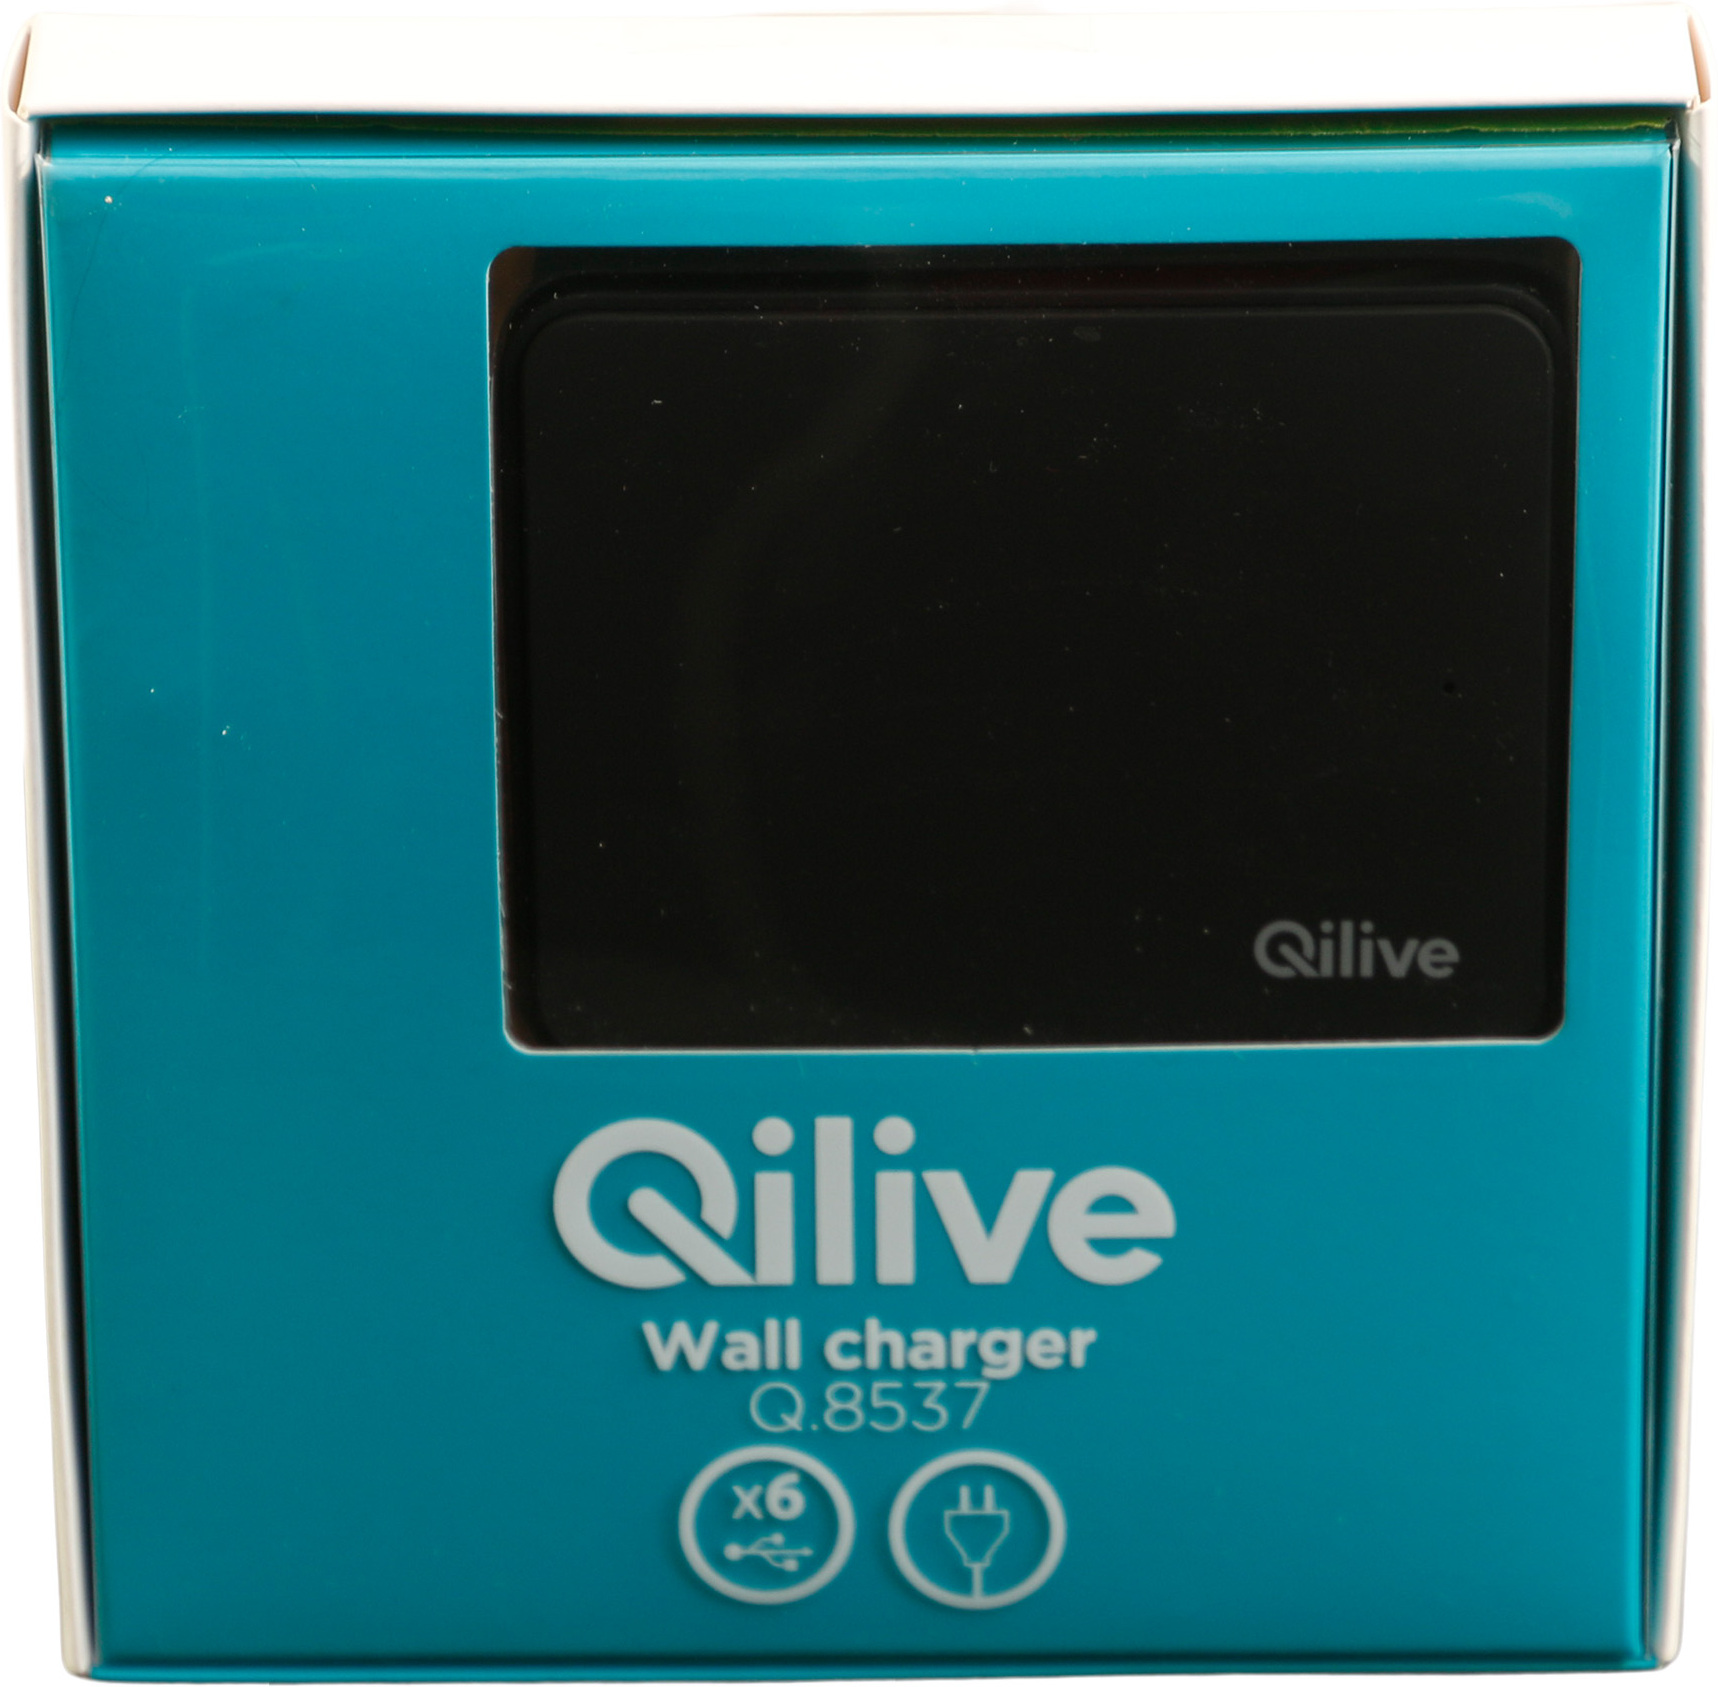 6fach USB Ladegerät mit Schnellladefunktion, Qilive